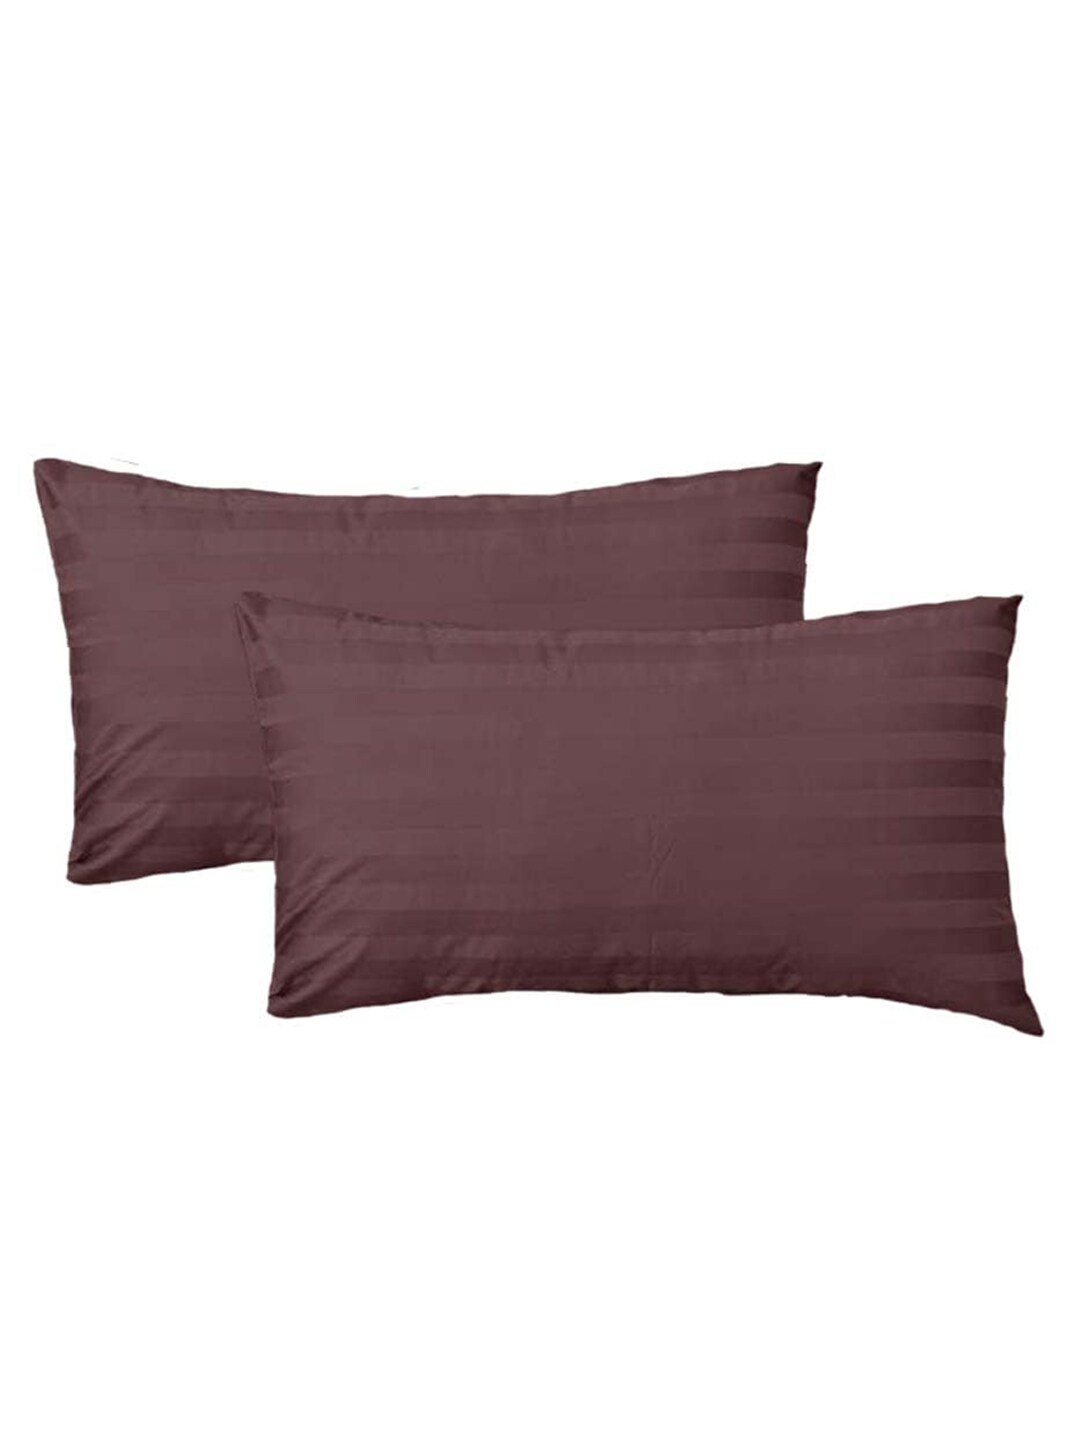 JDX Set of 2 Brown Striped Rectangular Sleeping Pillows Price in India